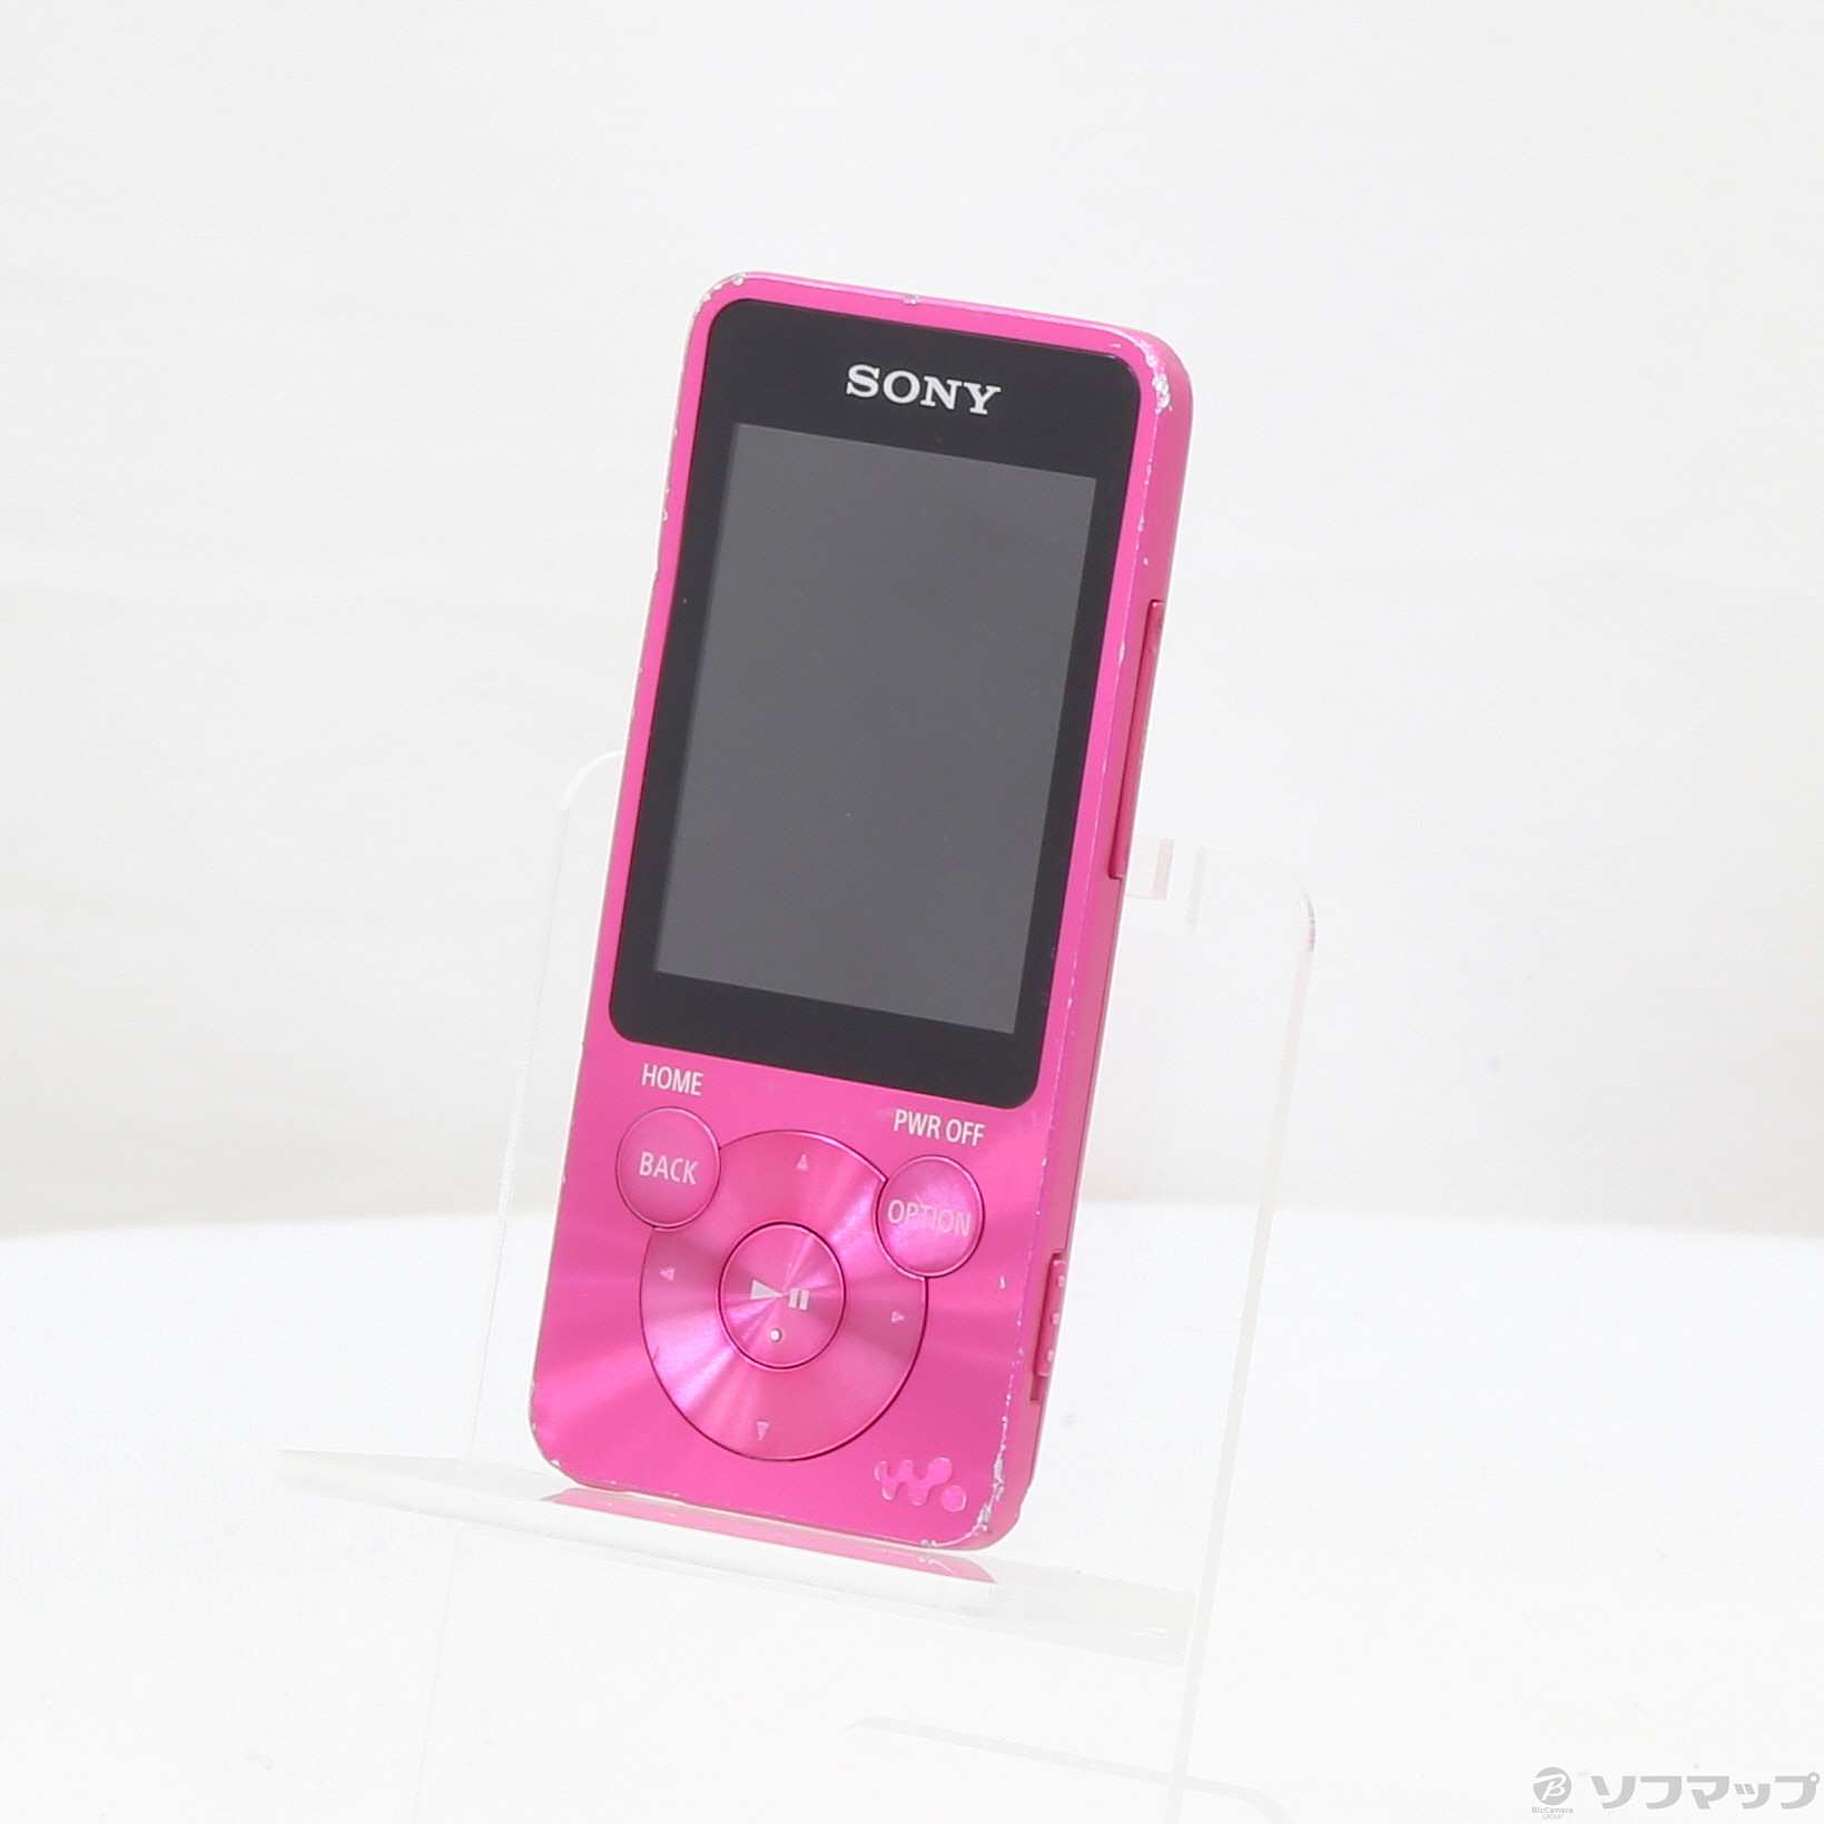 新品未使用 SONY ウォークマン NW-S13K 4GB ピンク